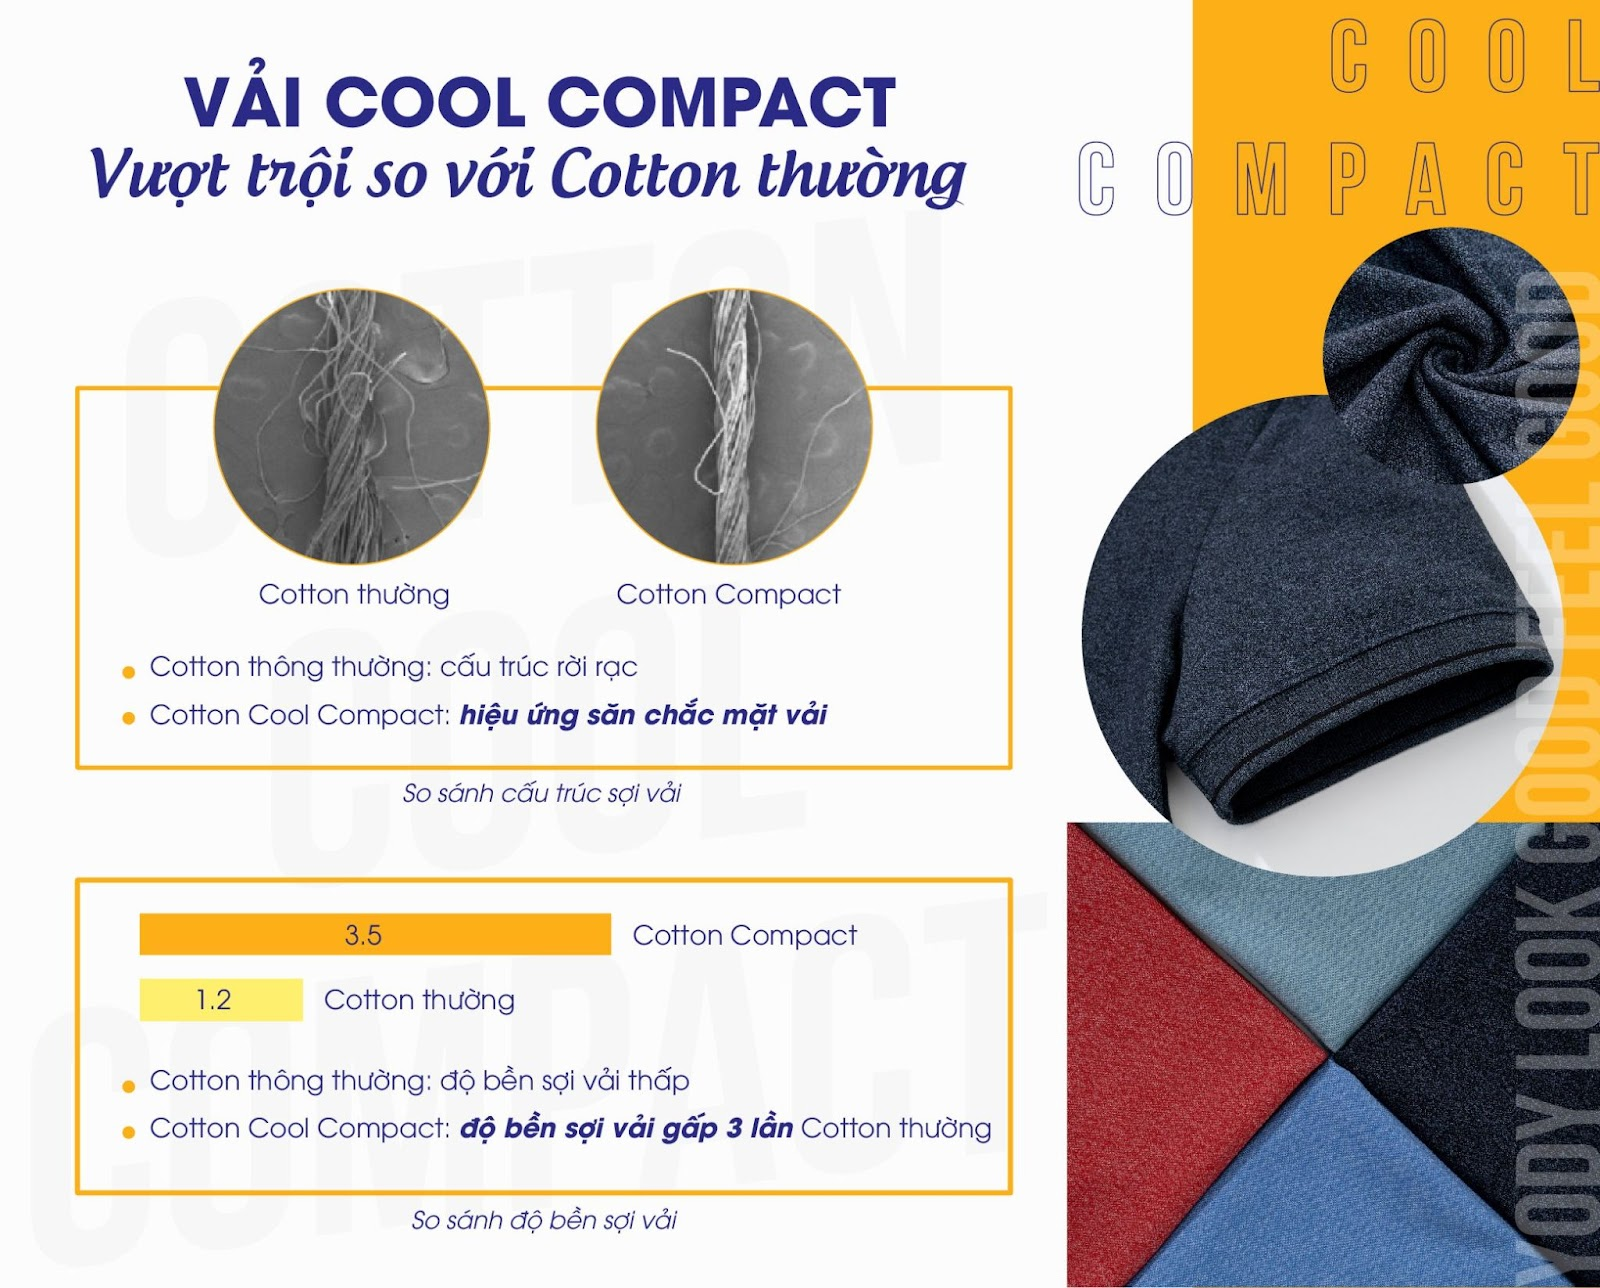 So sánh sợi vải Cool compact và sợi vải thun cotton